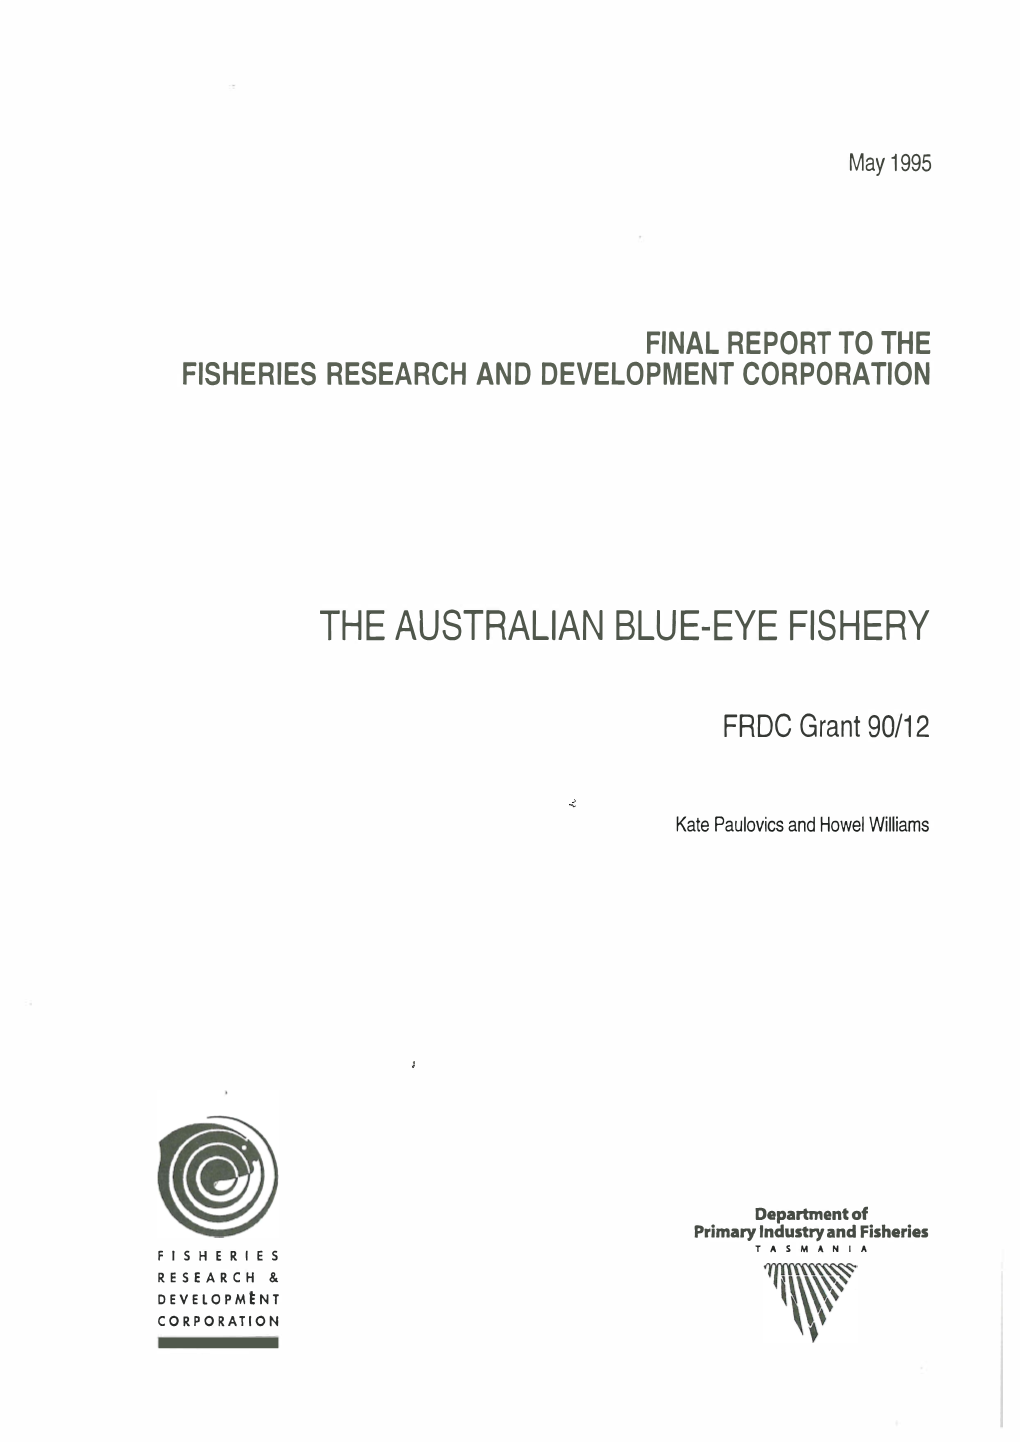 The Australian Blue-Eye Fishery